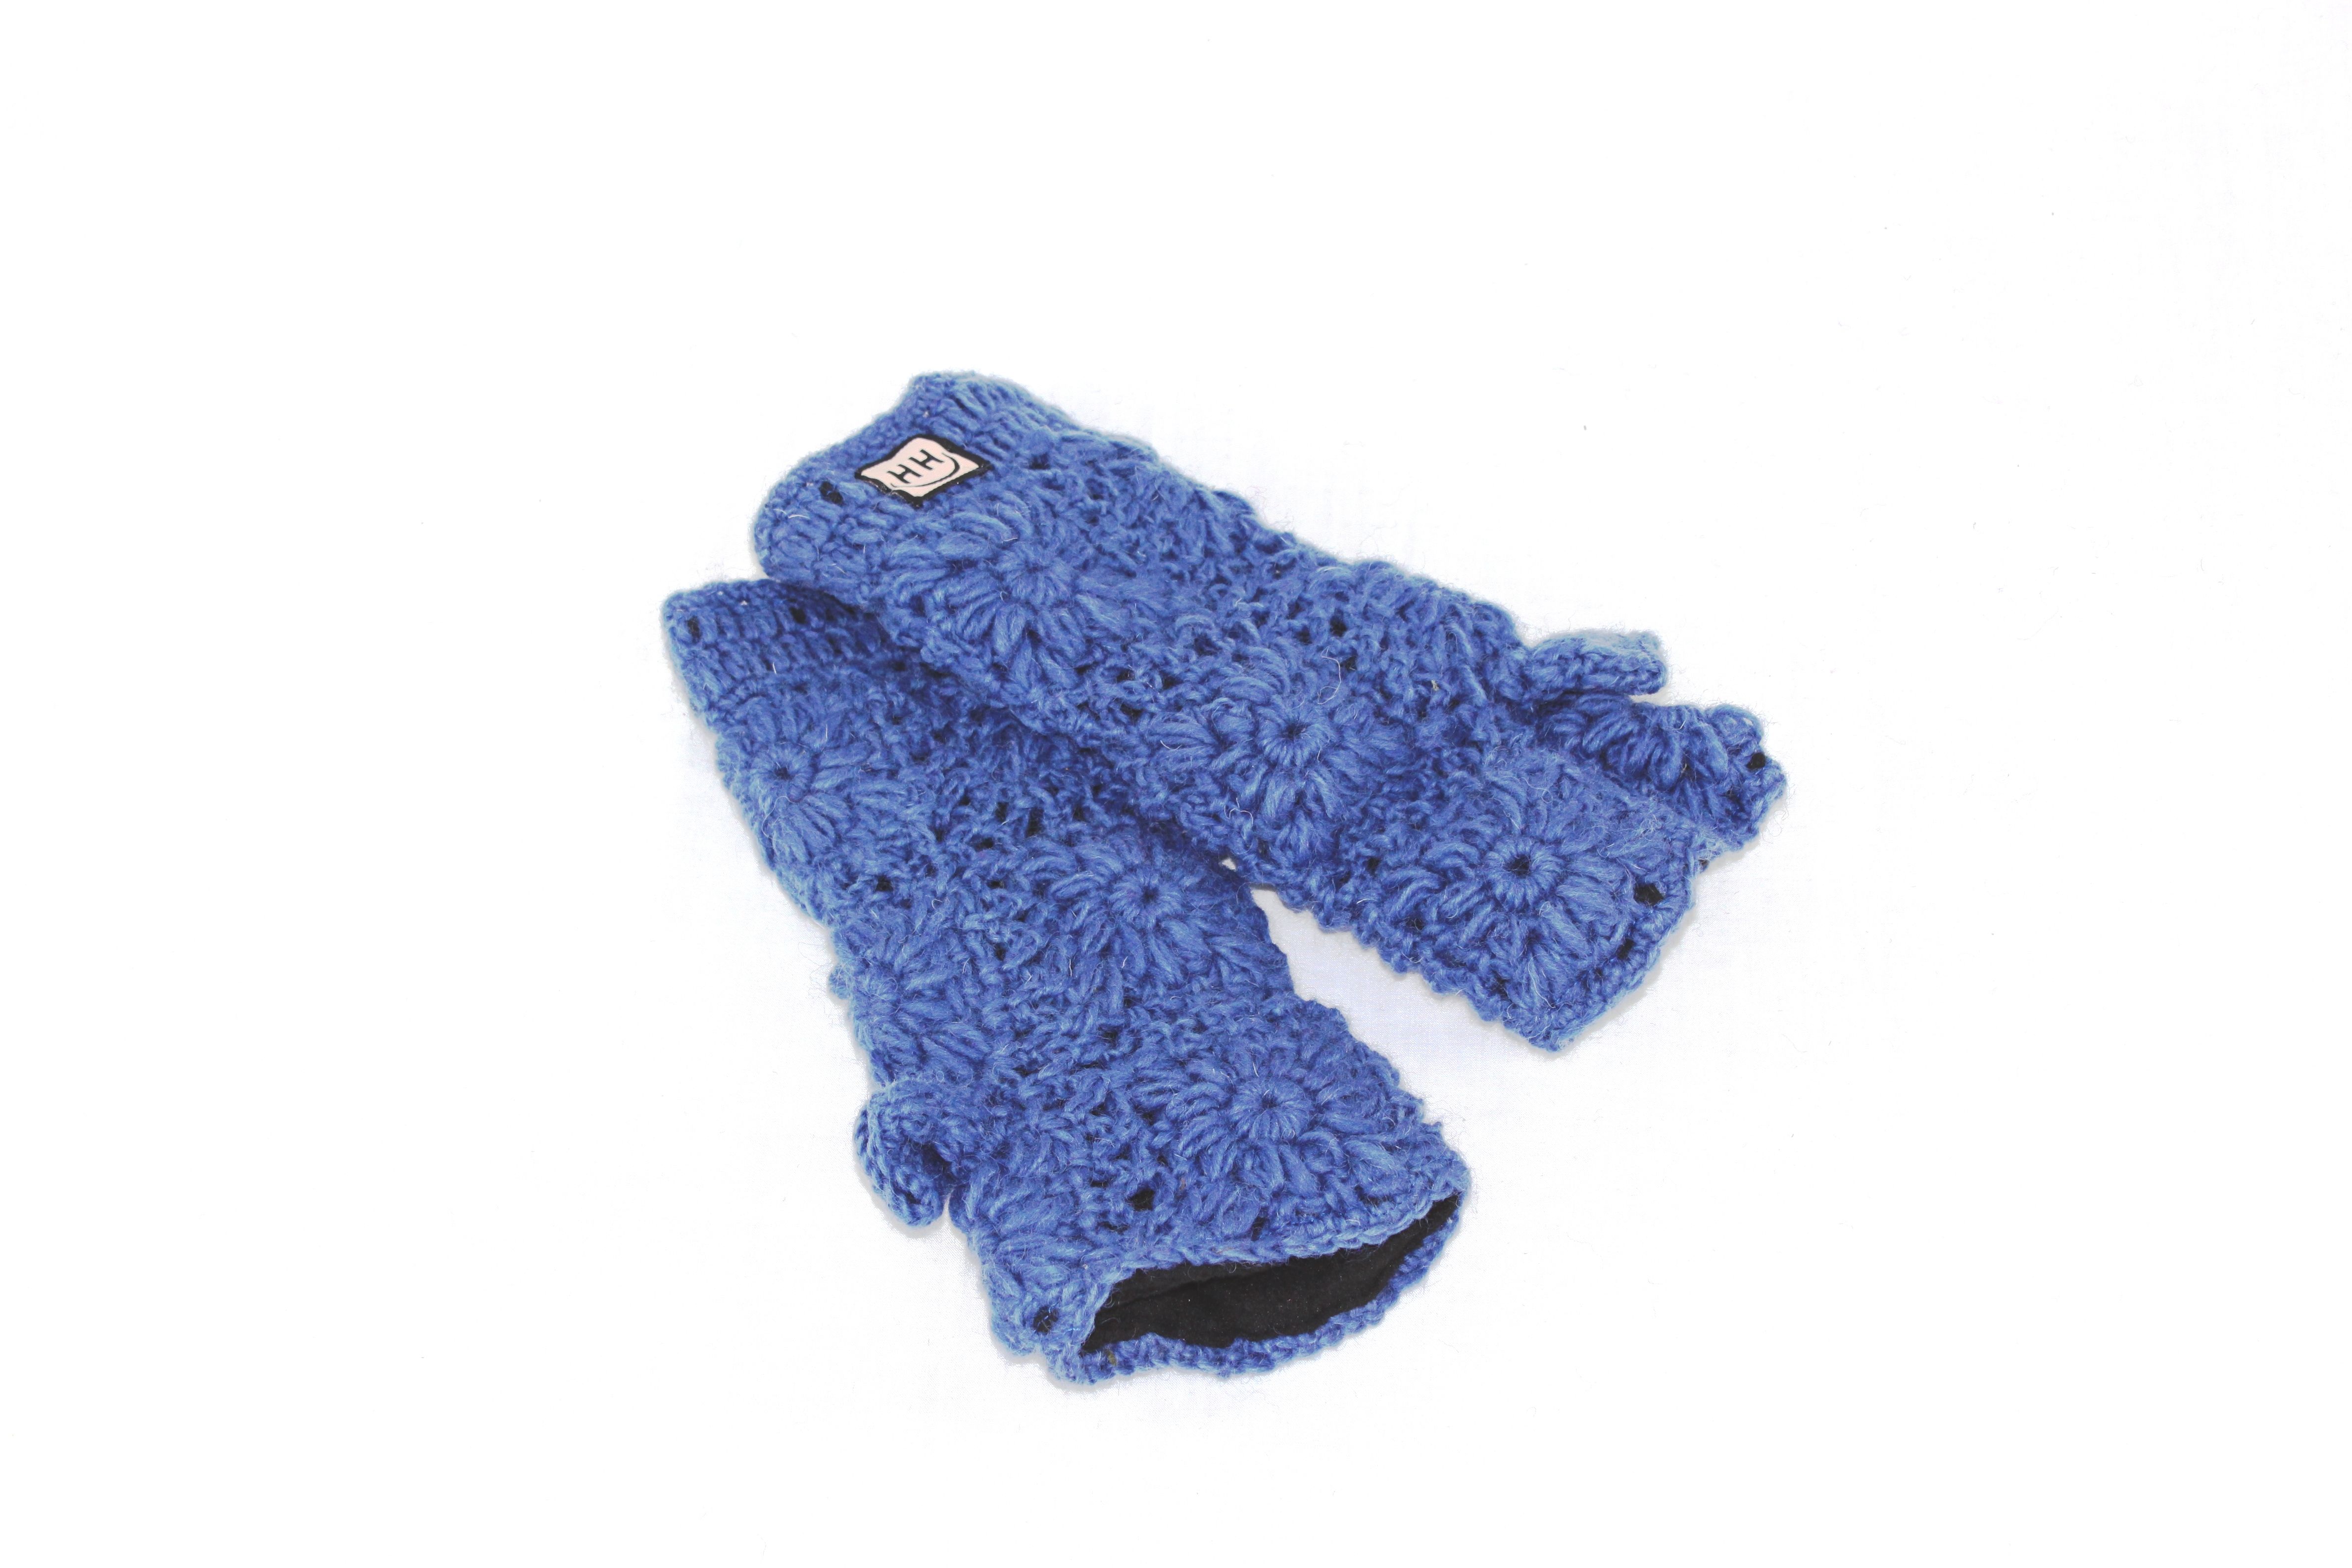 Crocheted Wrist Warmer -   Crocheted wrist warmers